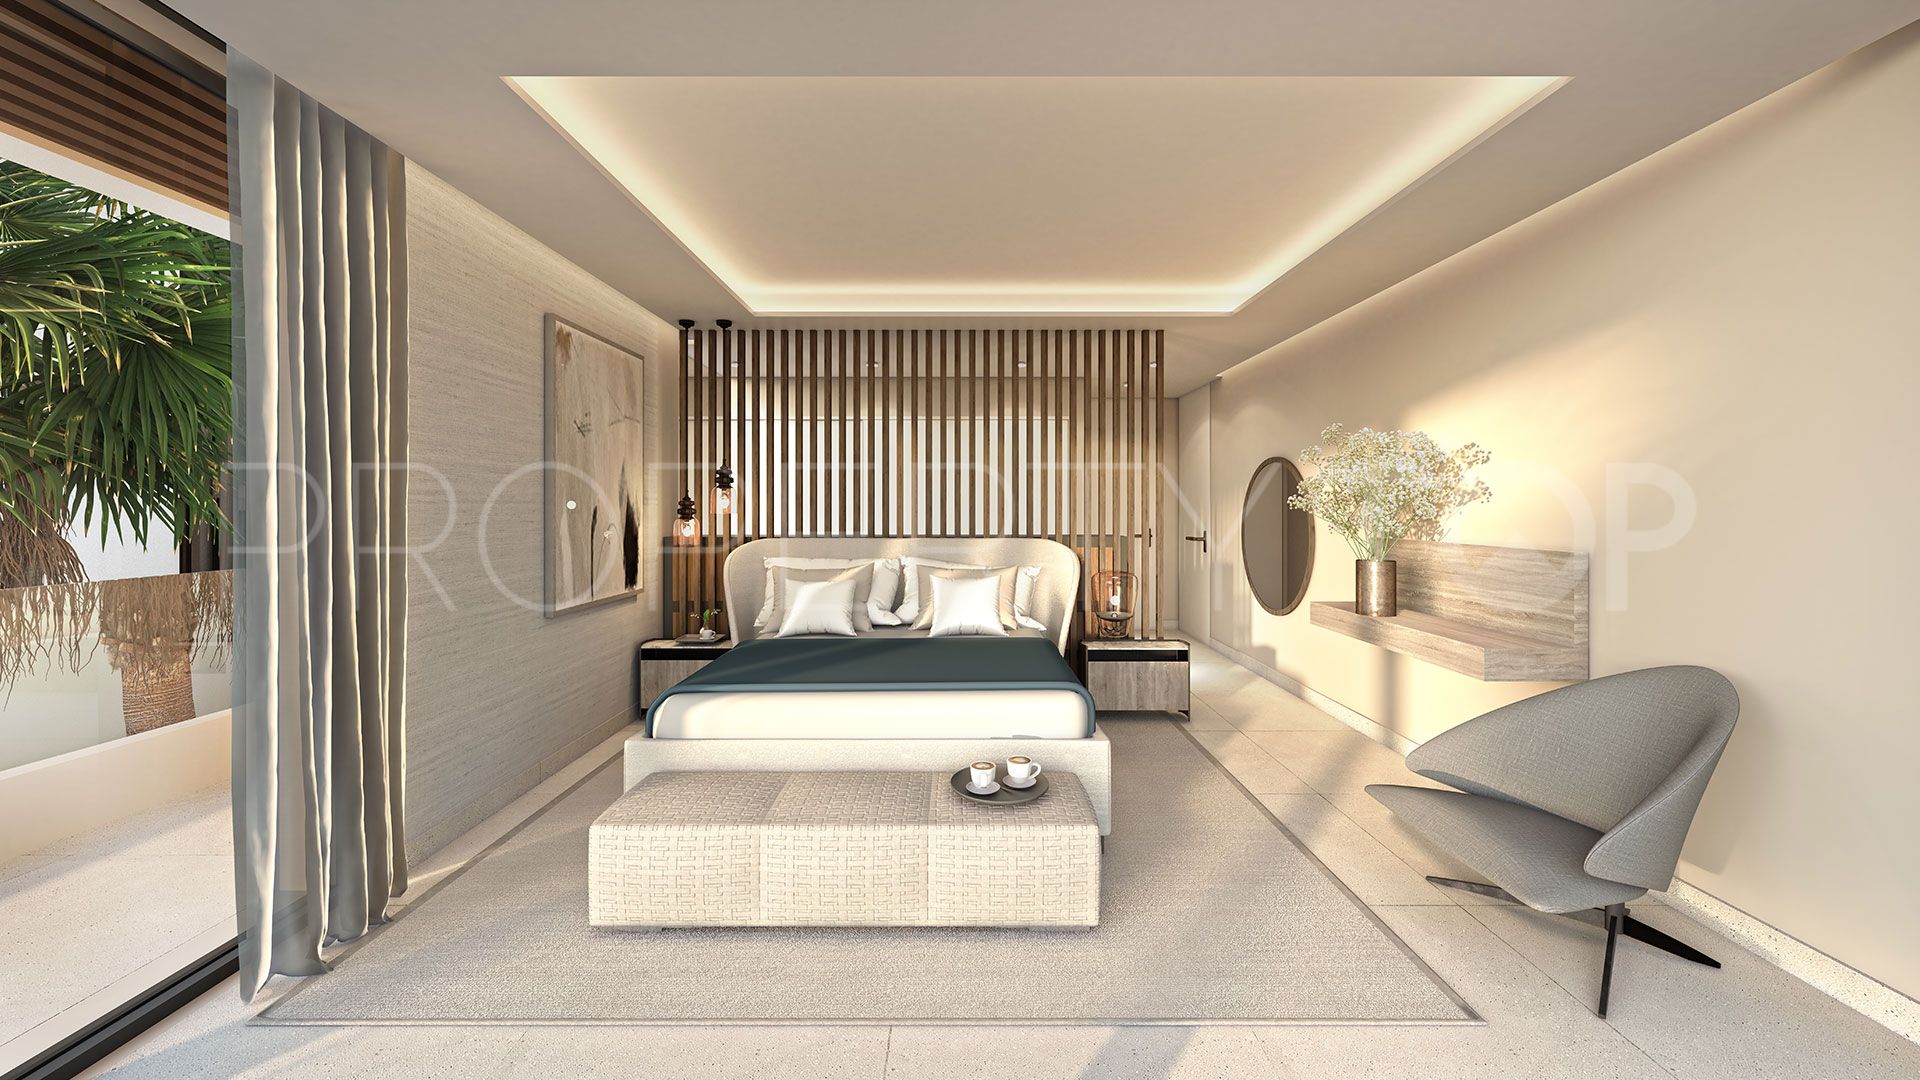 4 bedrooms Ventura del Mar villa for sale